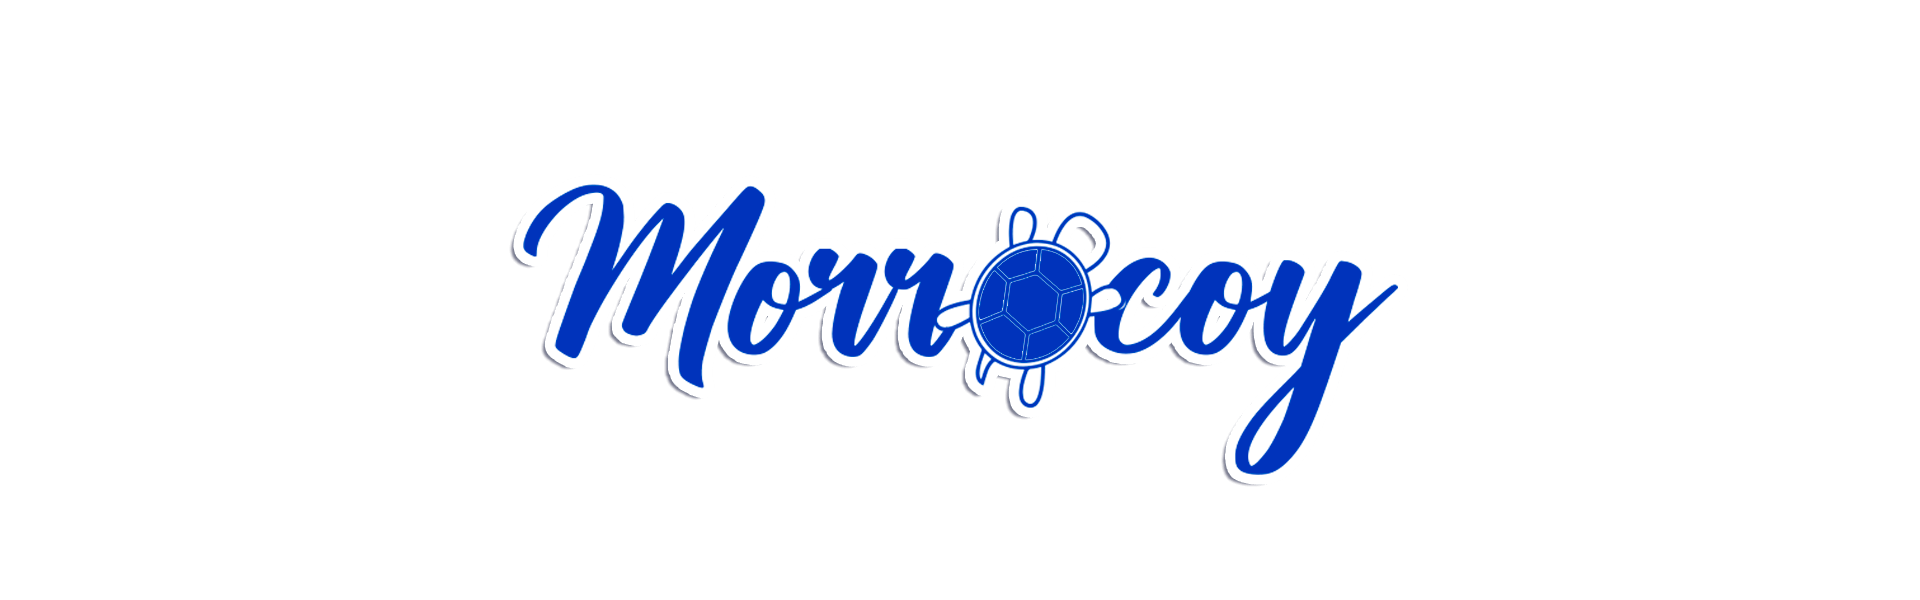 Morrocoy